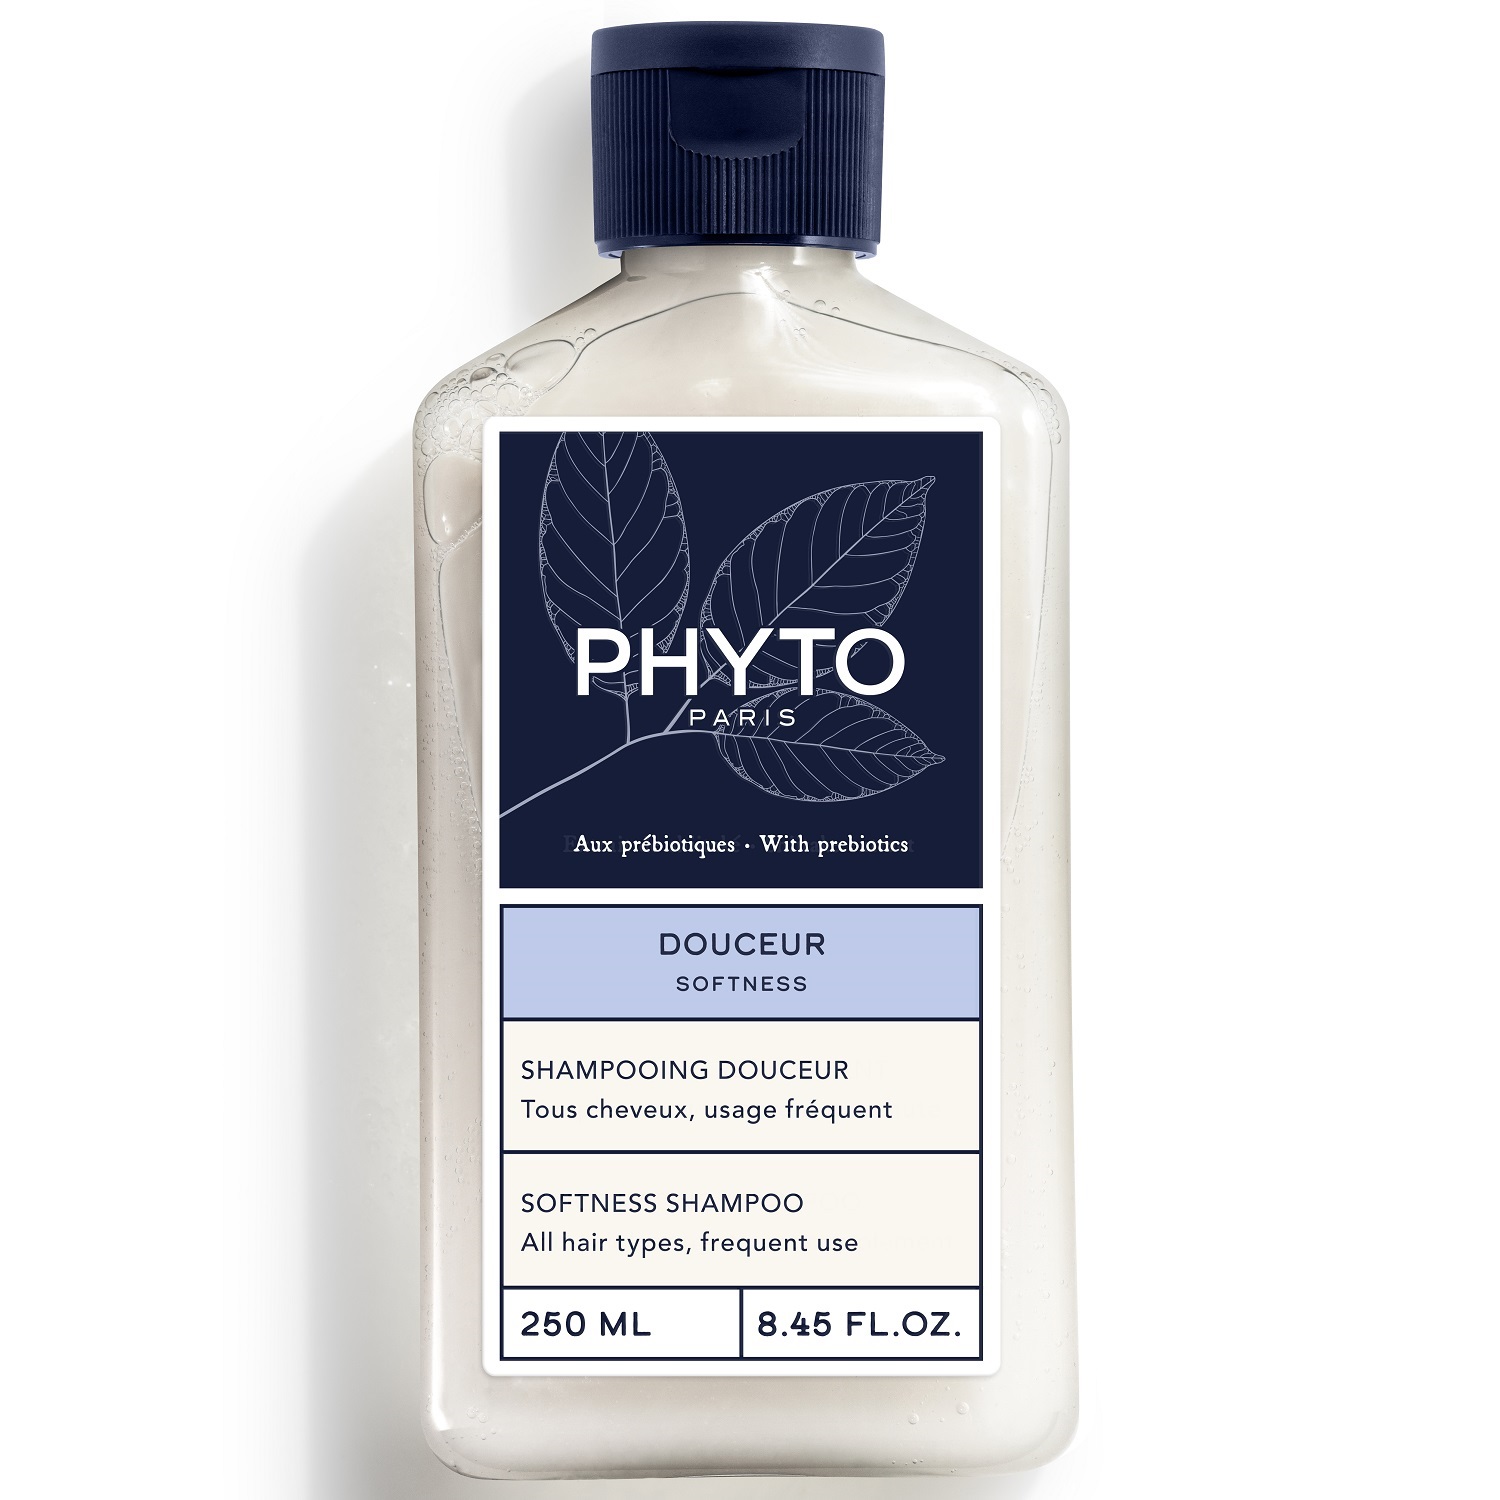 Phyto Cмягчающий шампунь для всей семьи, 250 мл (Phyto, Softness)